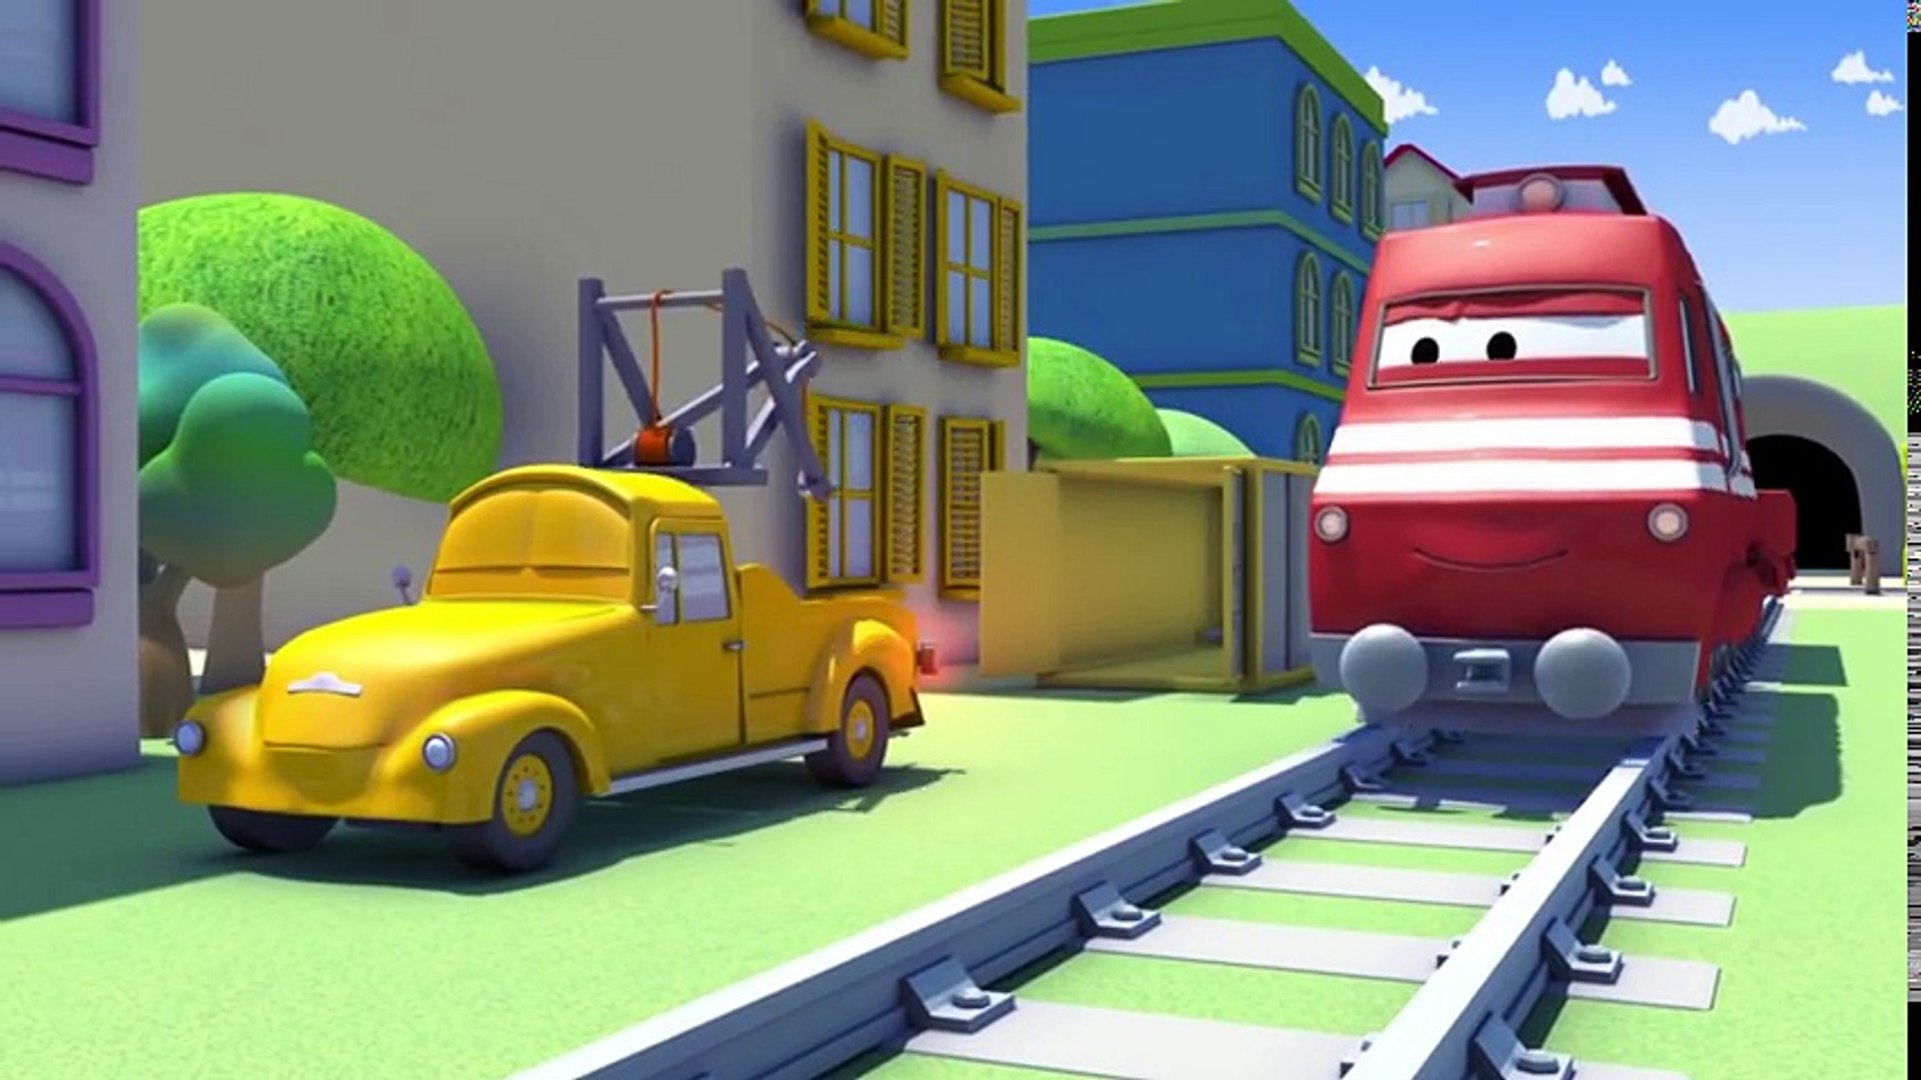 Çekici Tom ve onun arkadaşı Araba Şehri'nde | Araba ve Kamyon inşaat çizgi  filmi çocuklar için - Dailymotion Video